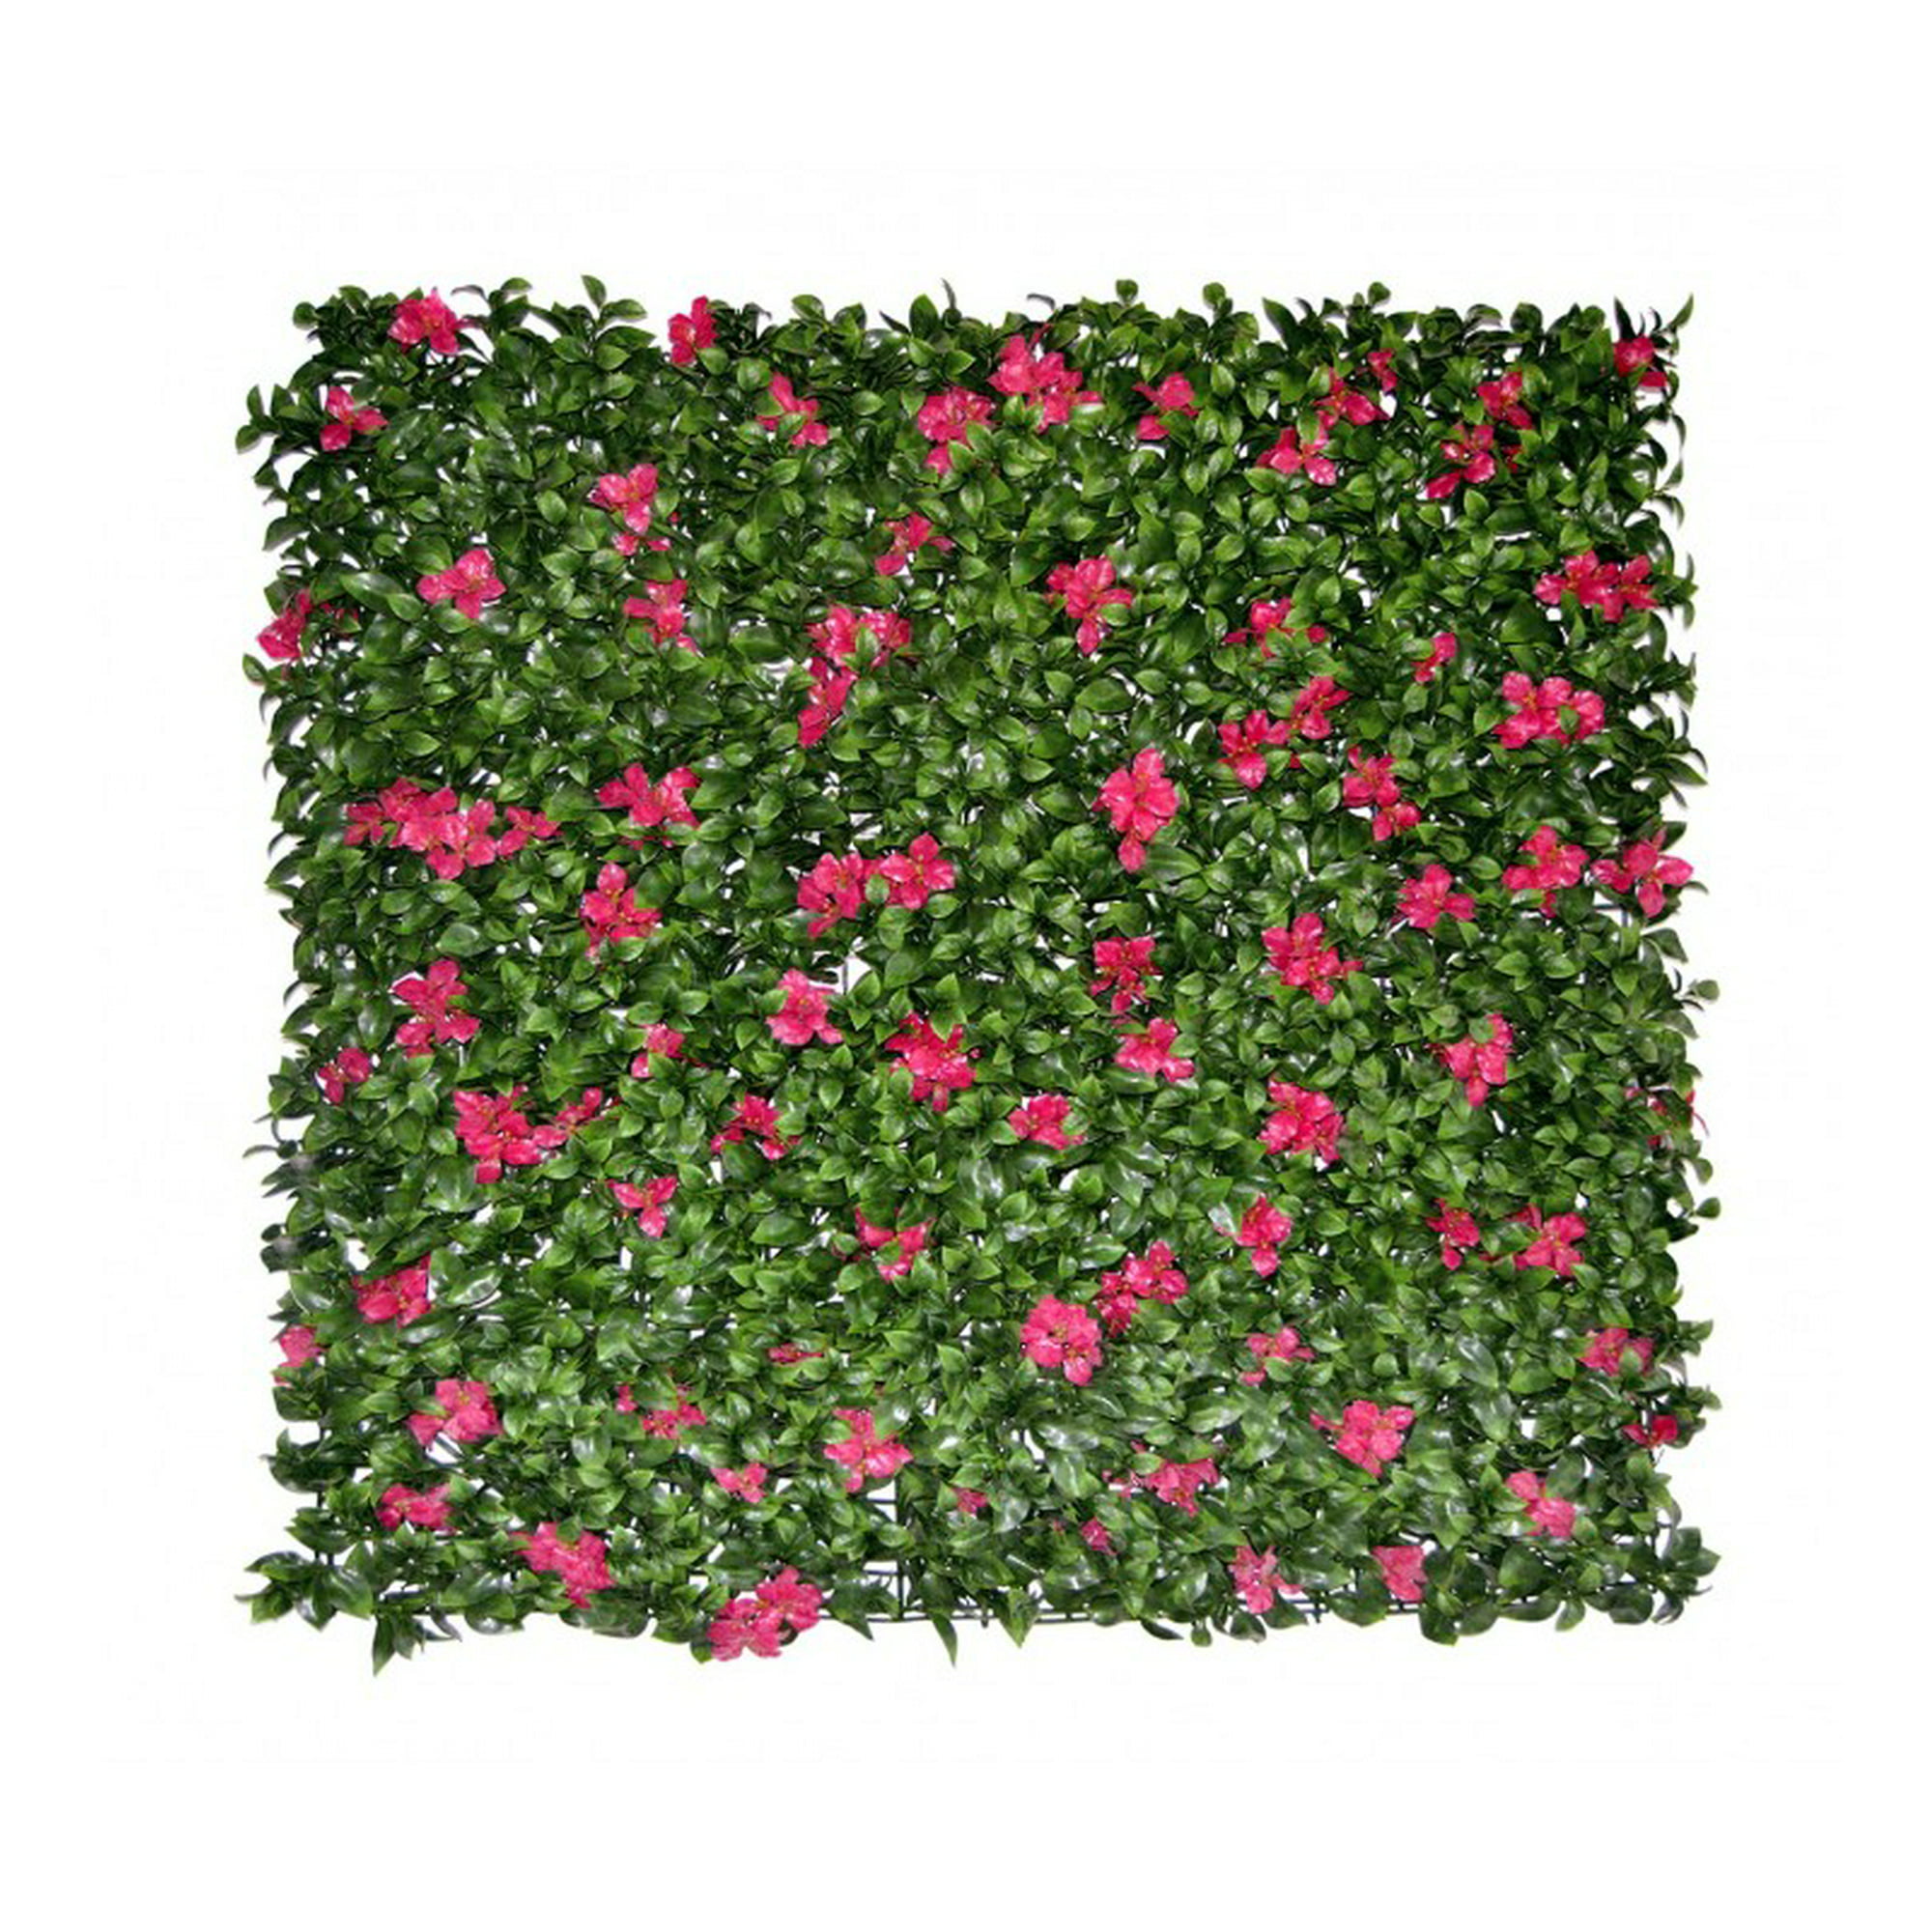 Muro verde Boxwood rojo, Follaje artificial caja con 3 m²